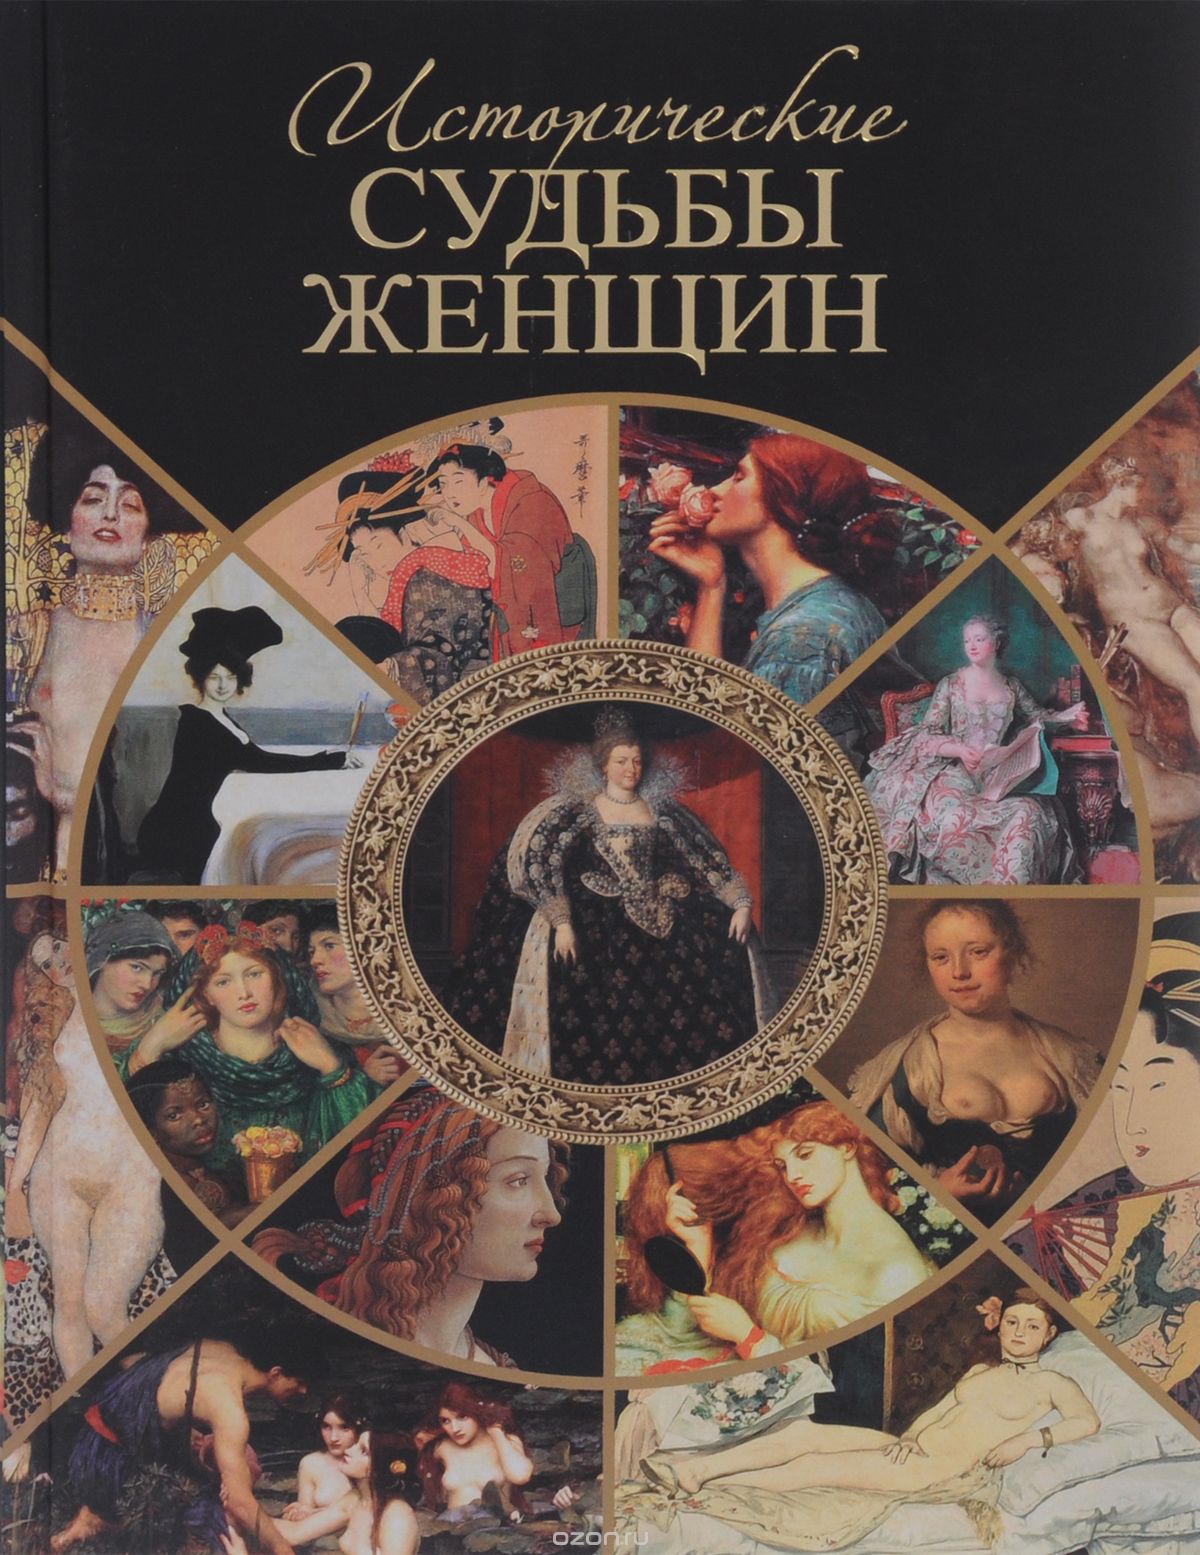 Скачать книгу "Исторические судьбы женщин, Серафим Шашков"